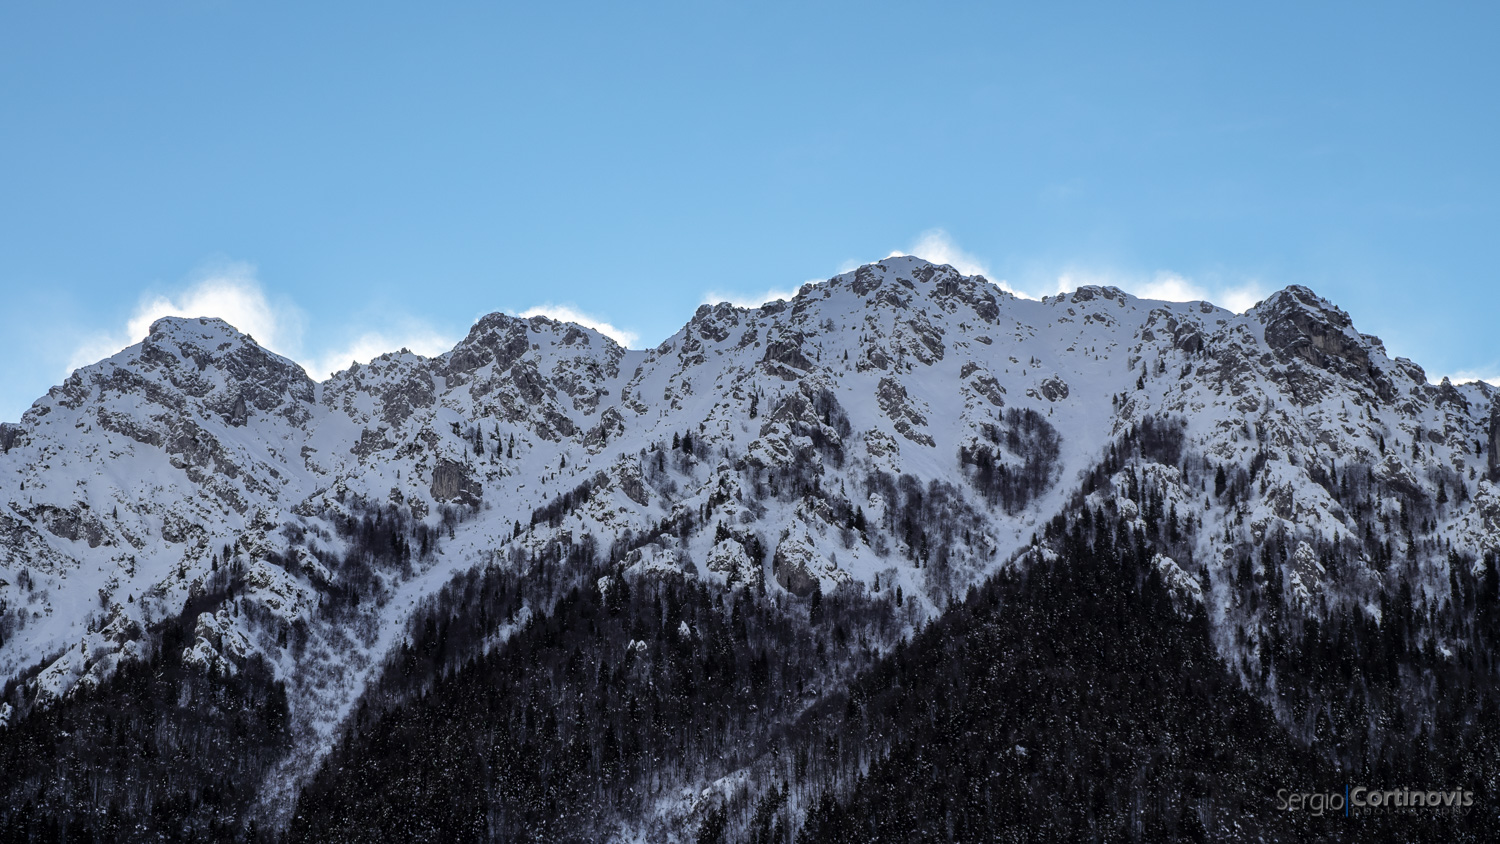 Il profilo del monte Alben in valle Serina sferzato dal vento invernale che solleva la neve